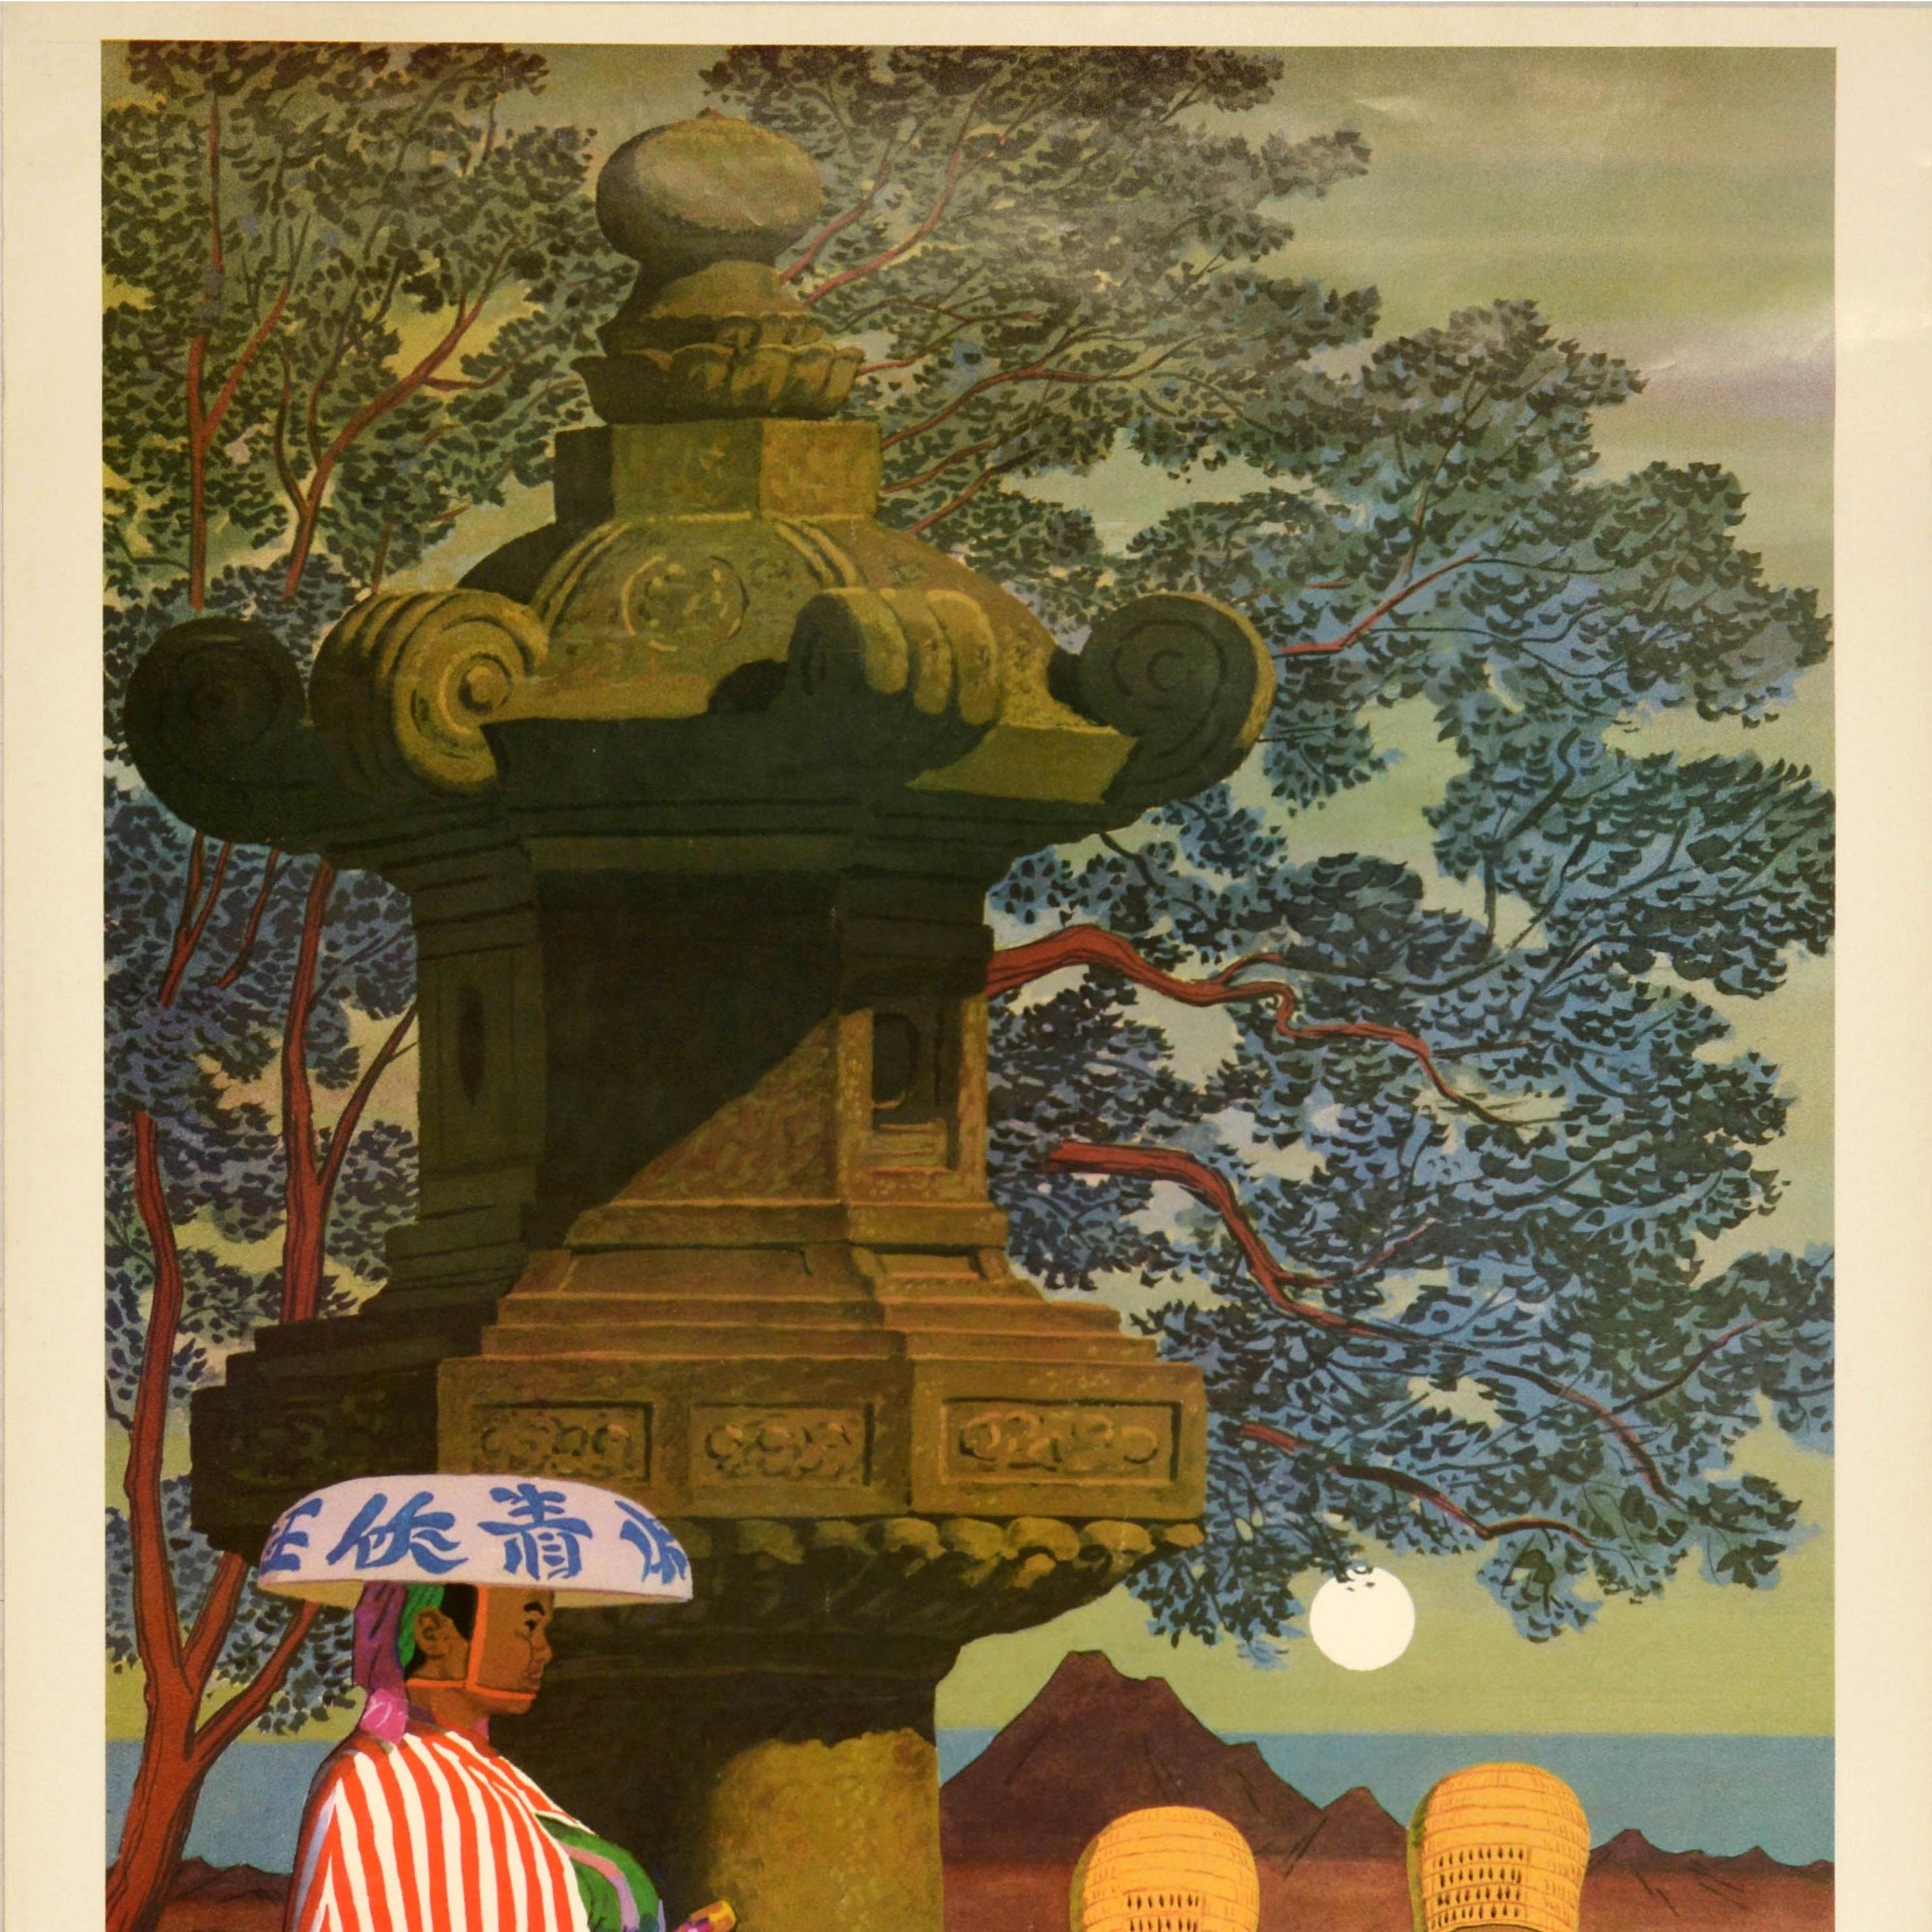 Original-Vintage-Reiseplakat, Japan, Ronin Samurai Komuso, Zen-Buddhismus, Monks (Braun), Print, von Unknown